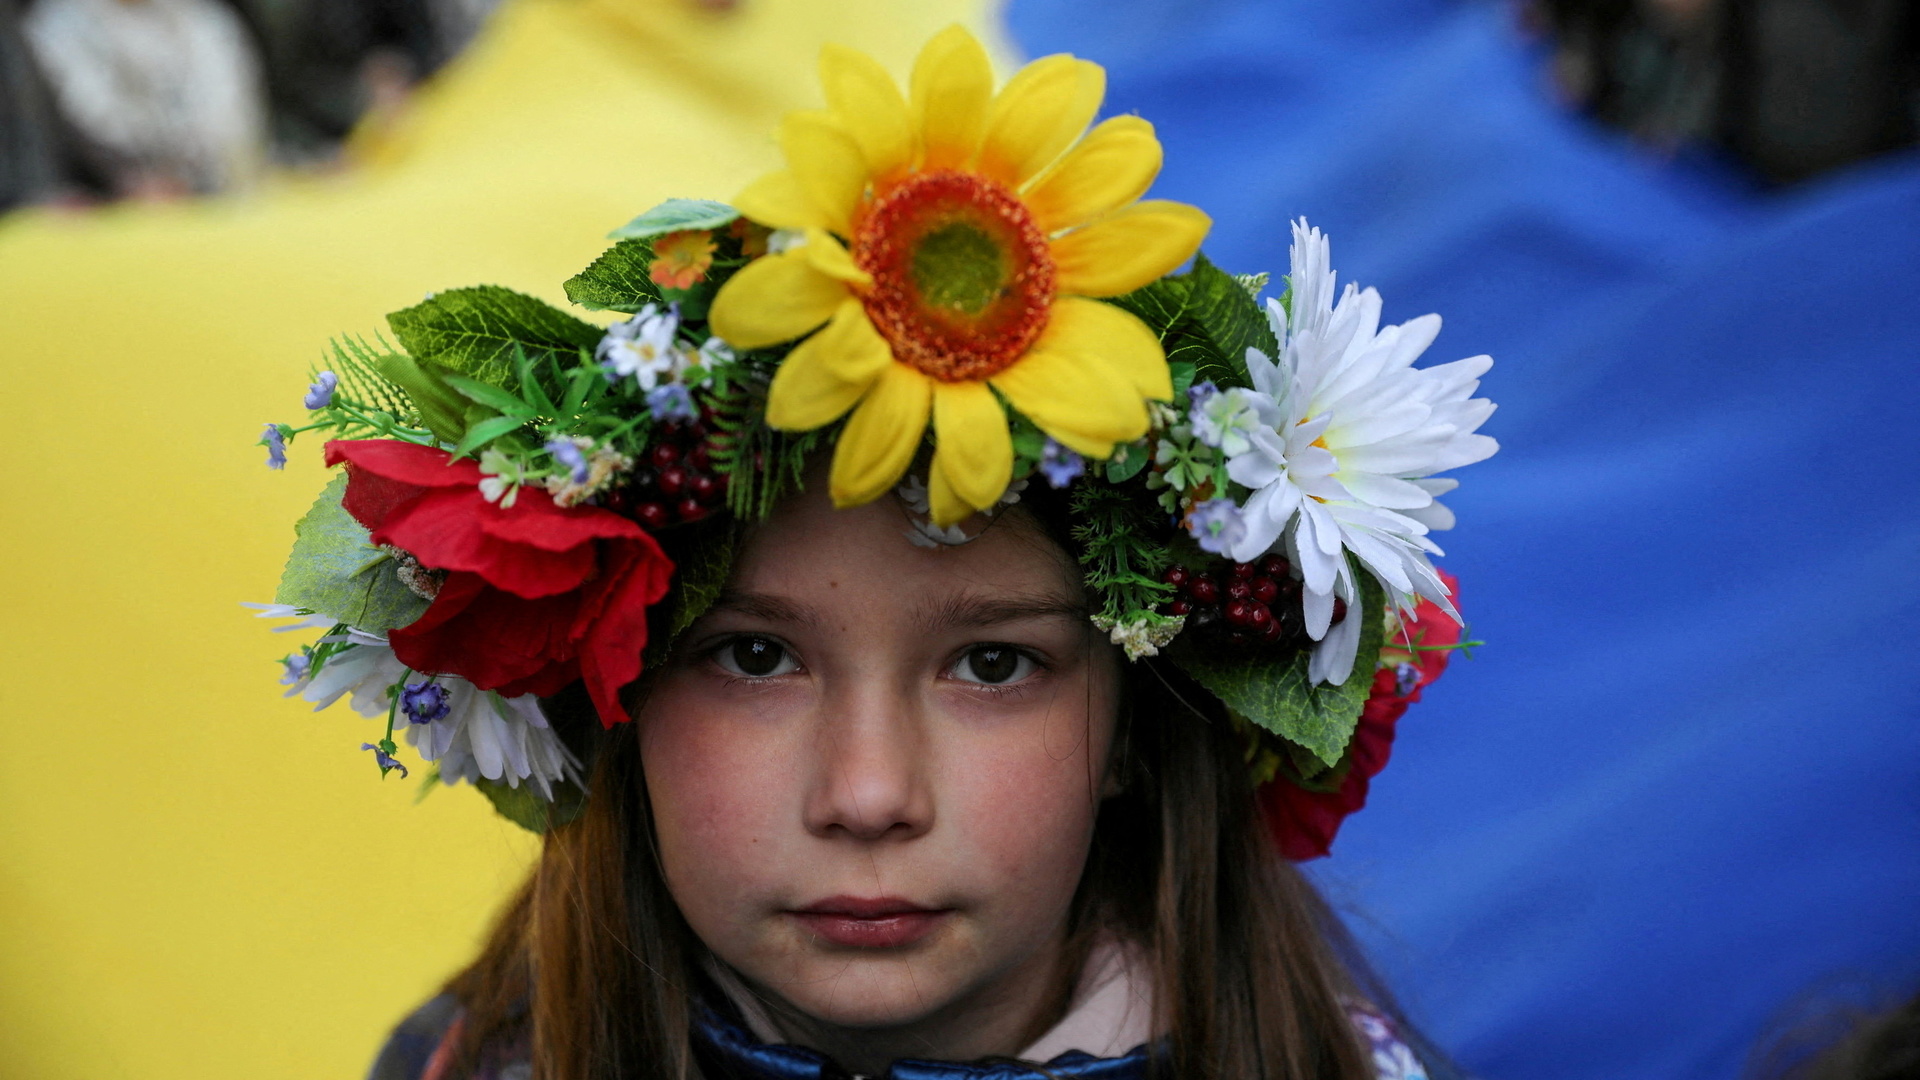 ukrainian flag, young gir, krakow, poland